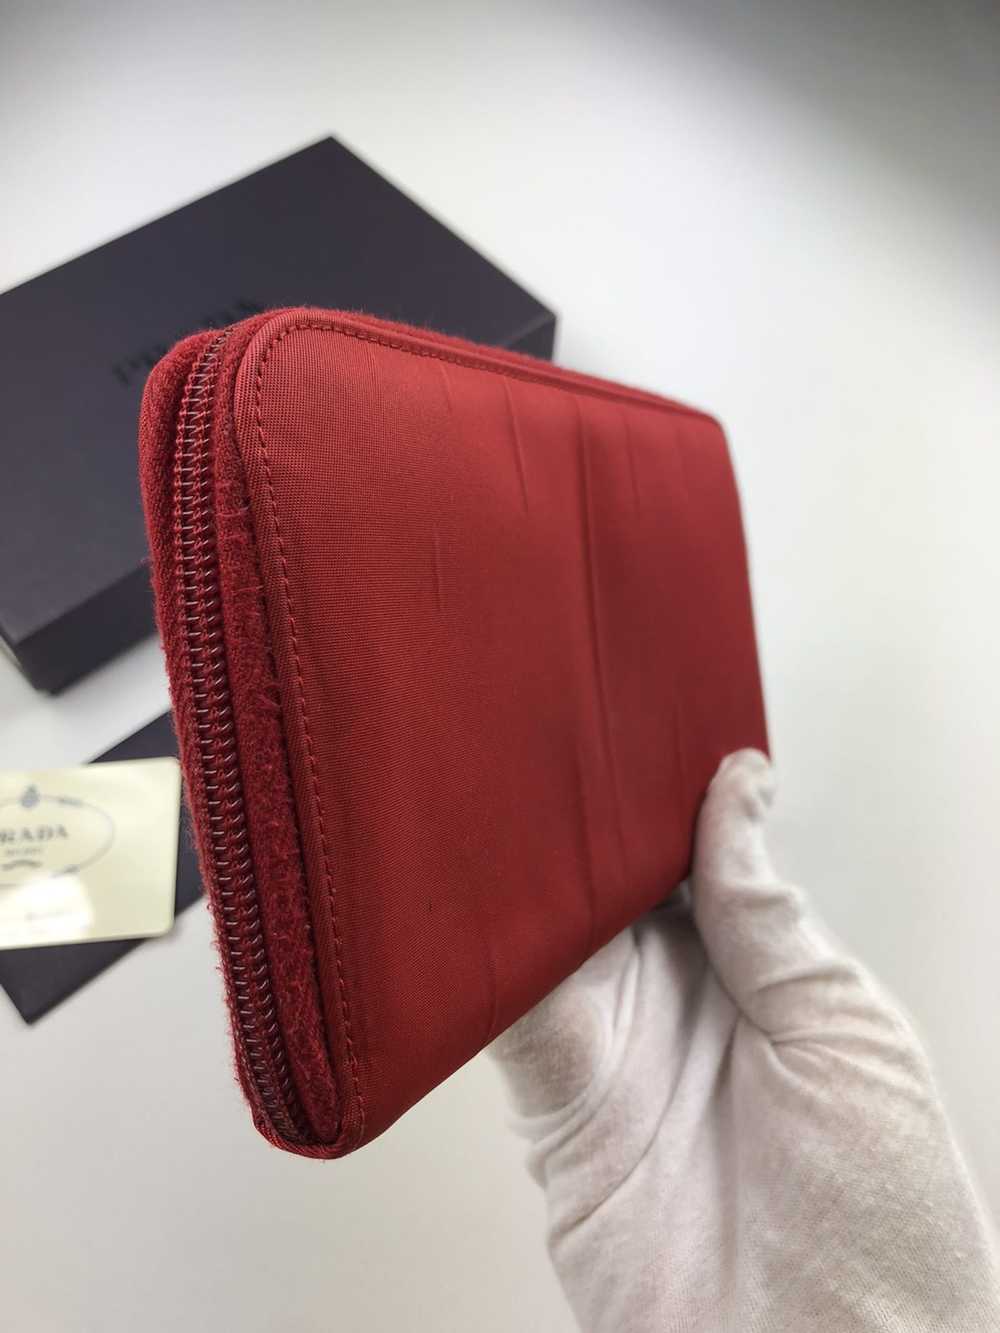 Prada Prada tessuto red nylon zippy wallet - image 8